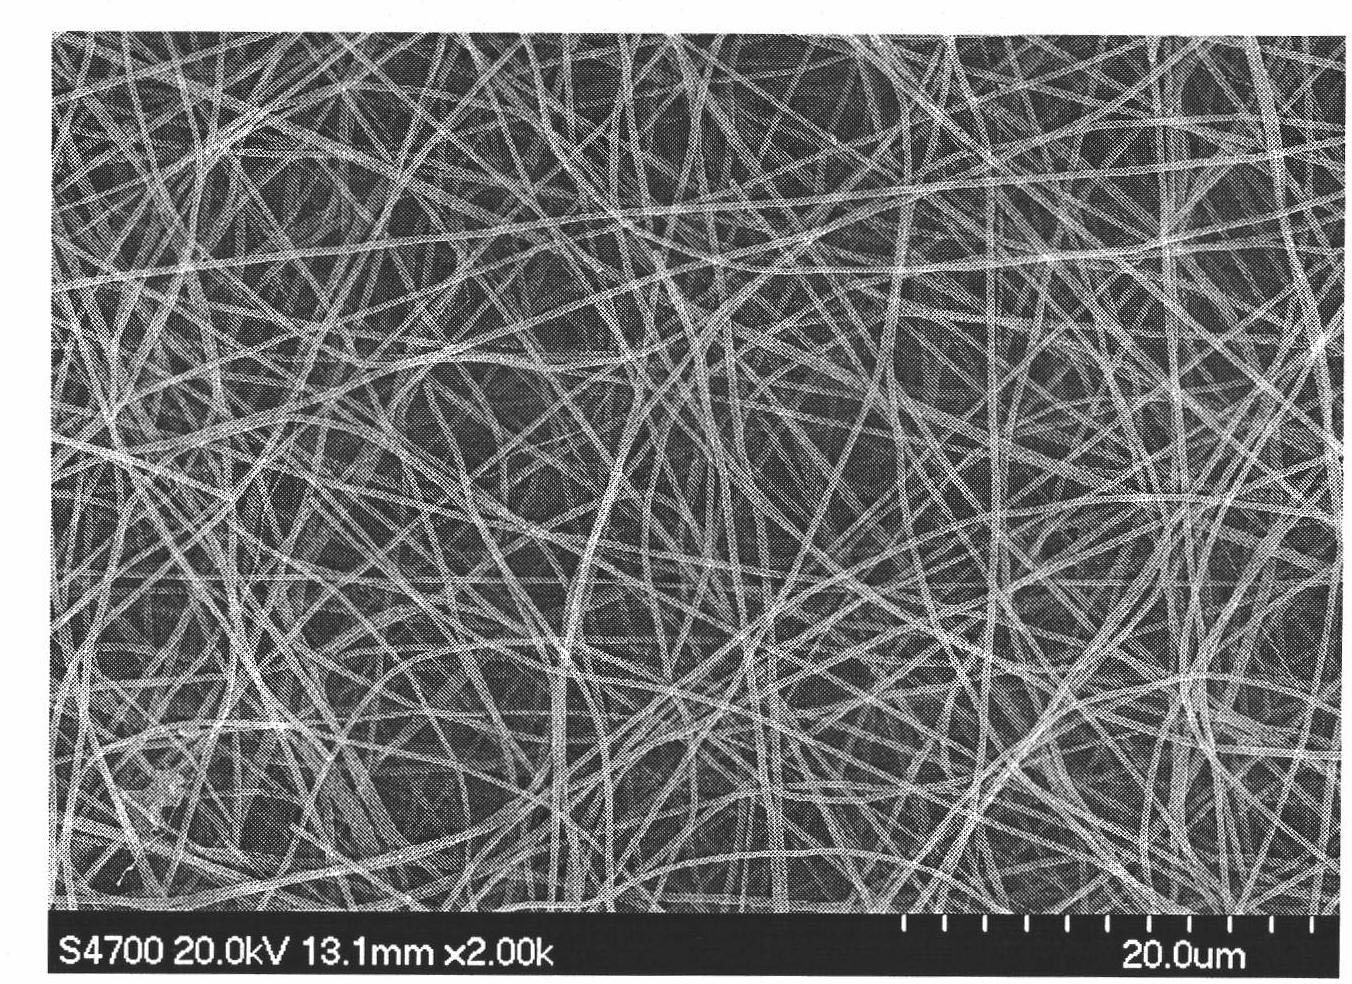 Preparation method of medicament-loaded biodegradable nano-fiber medical dressing